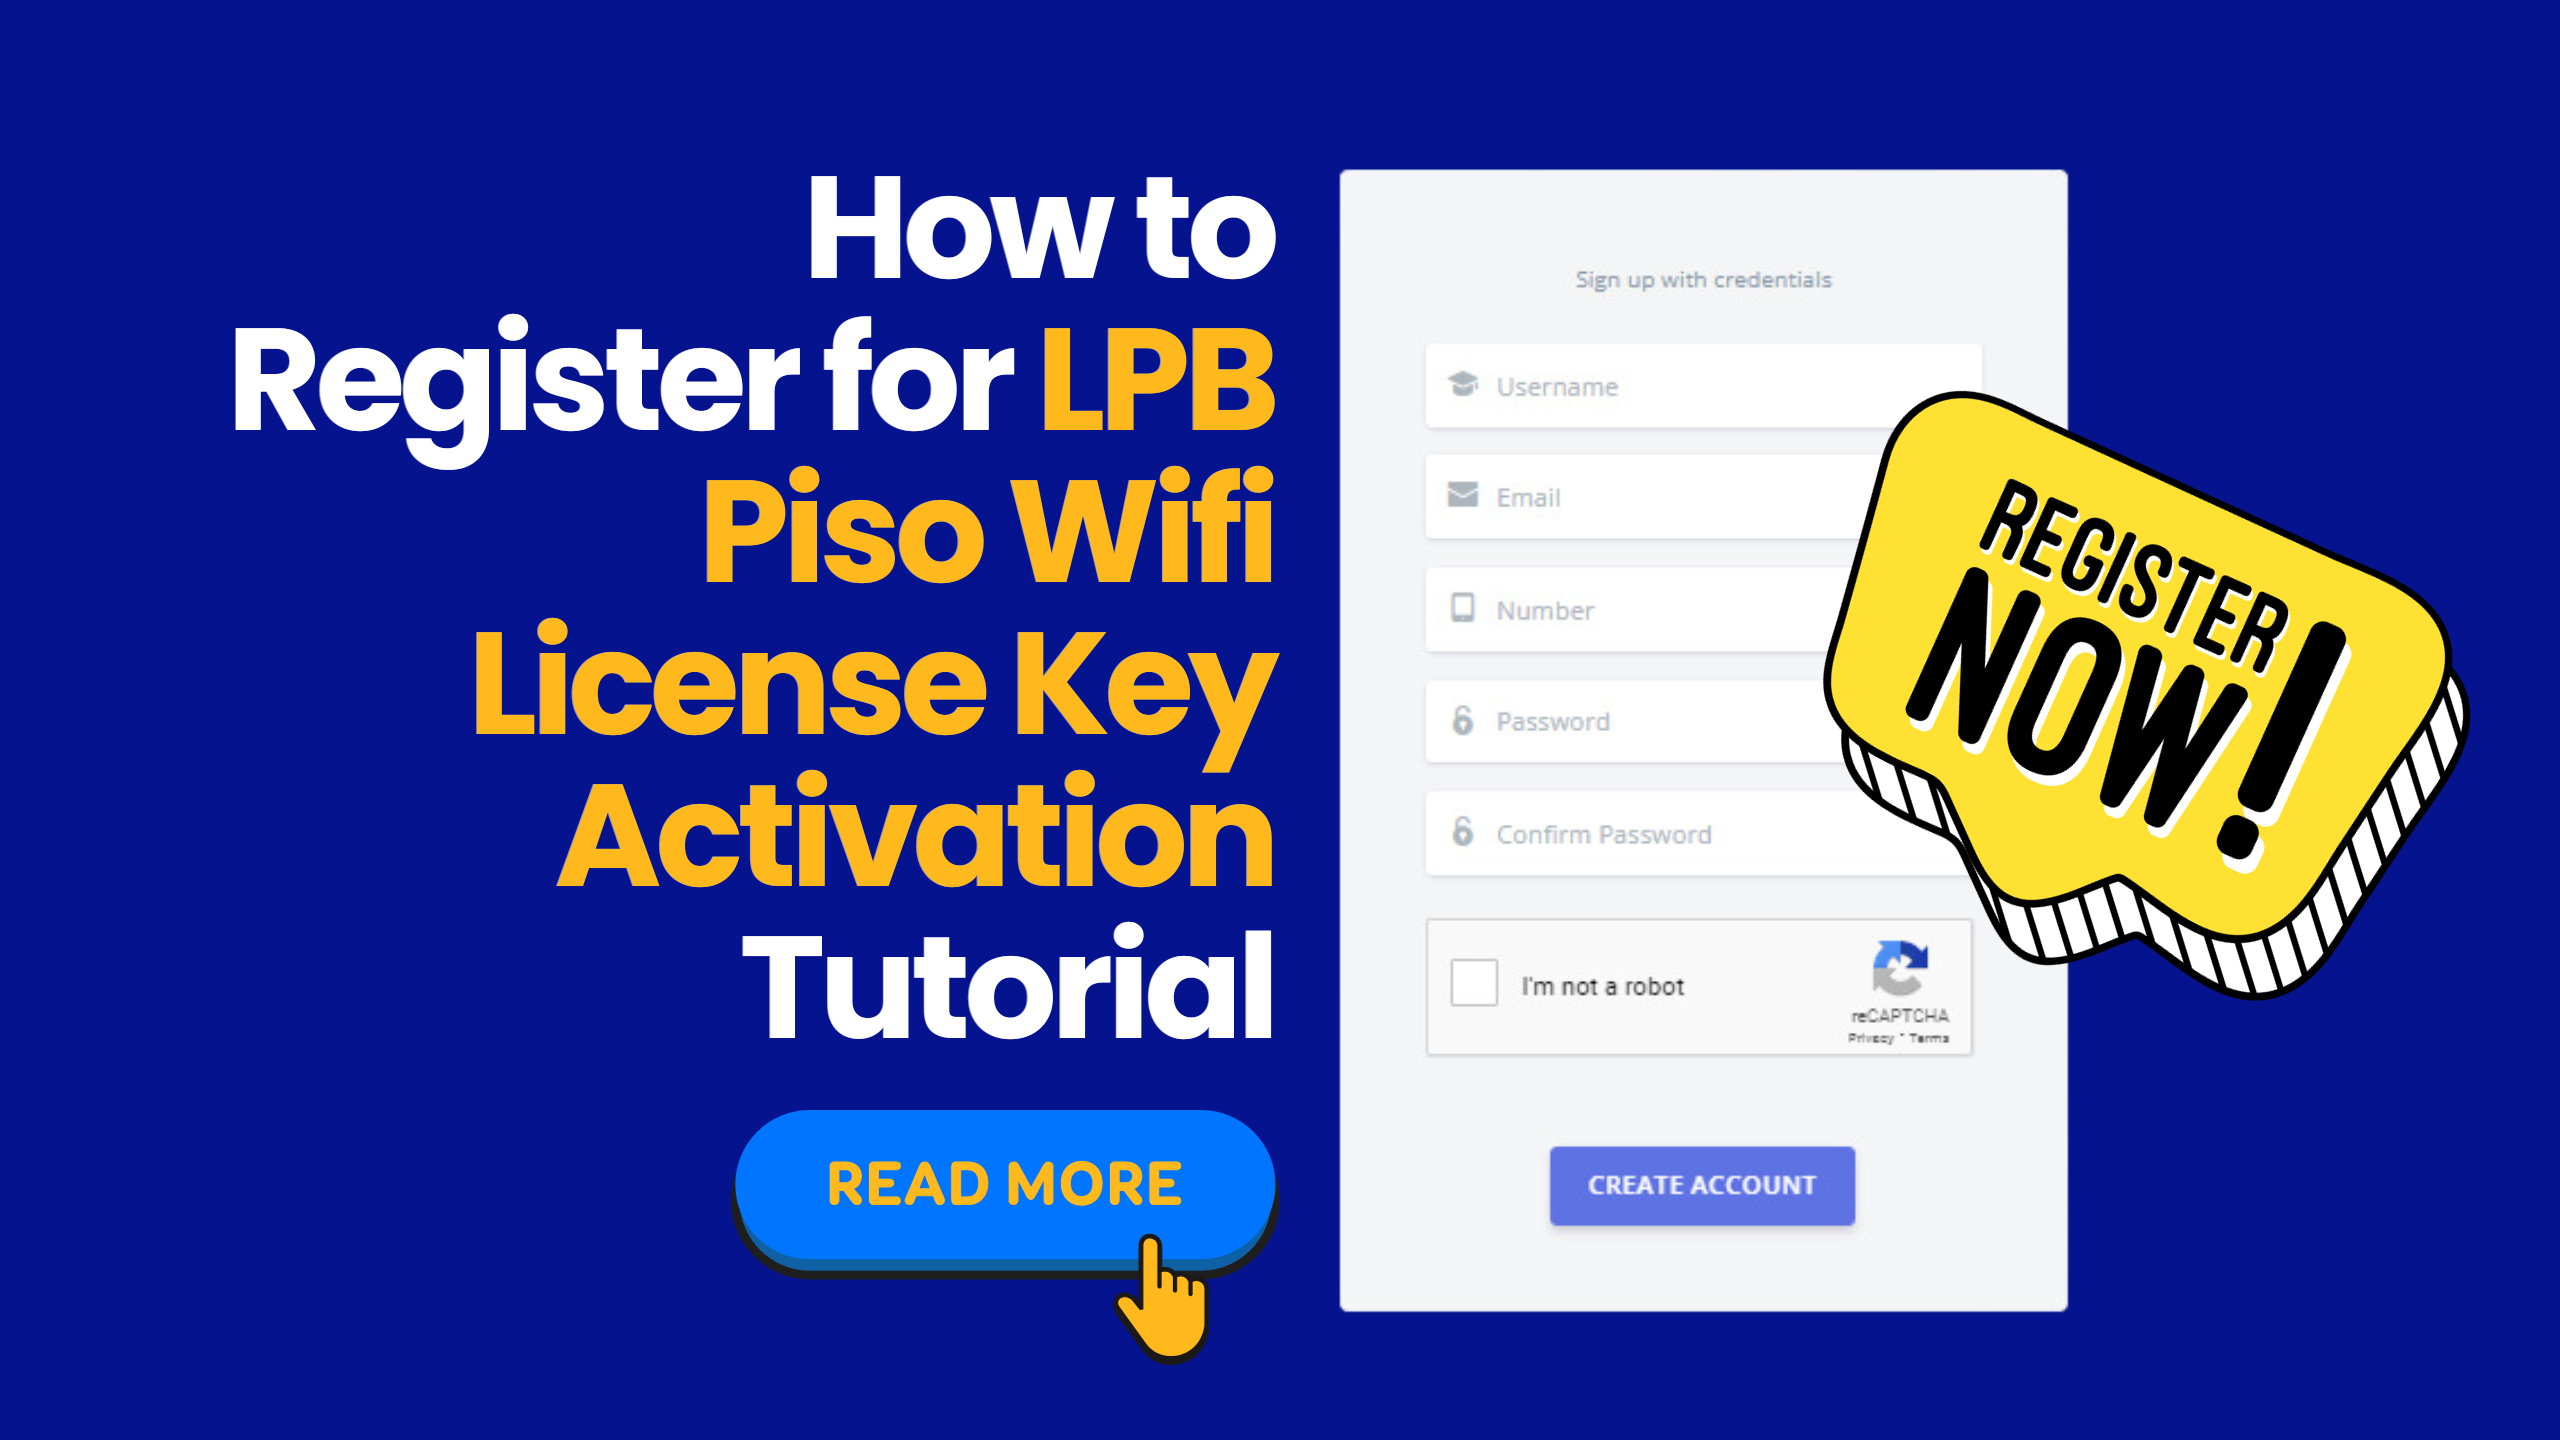 Register for LPB Piso Wifi